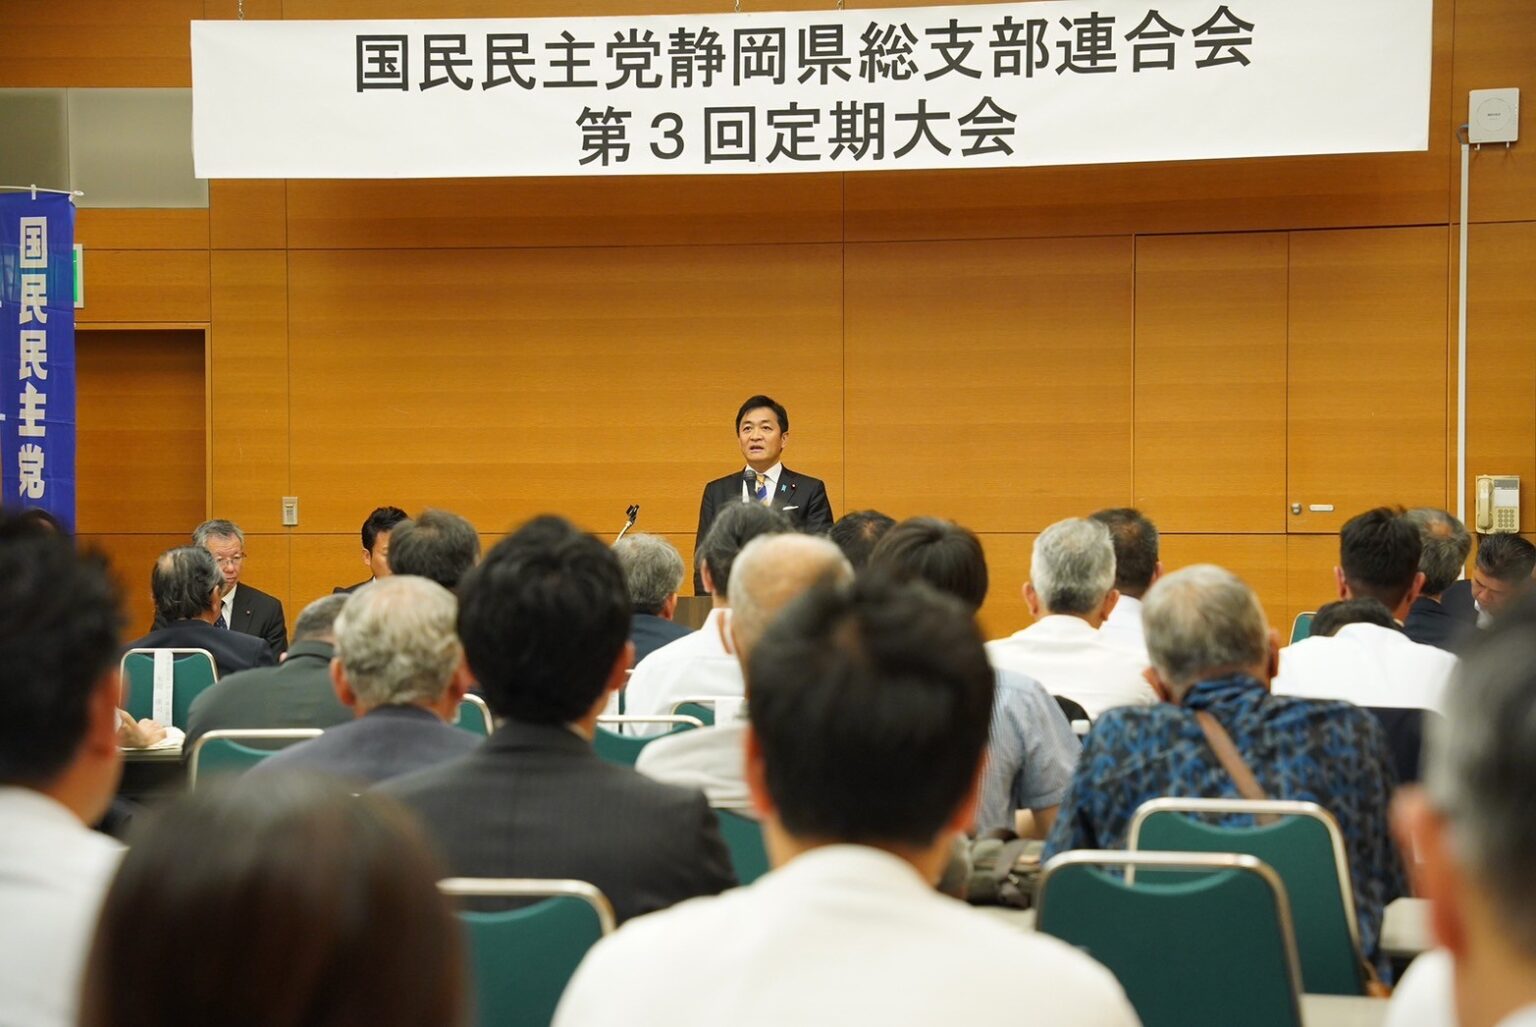 【静岡】「国民民主党が中核的役割を担い、政治を変えていく」玉木代表が県連大会で挨拶